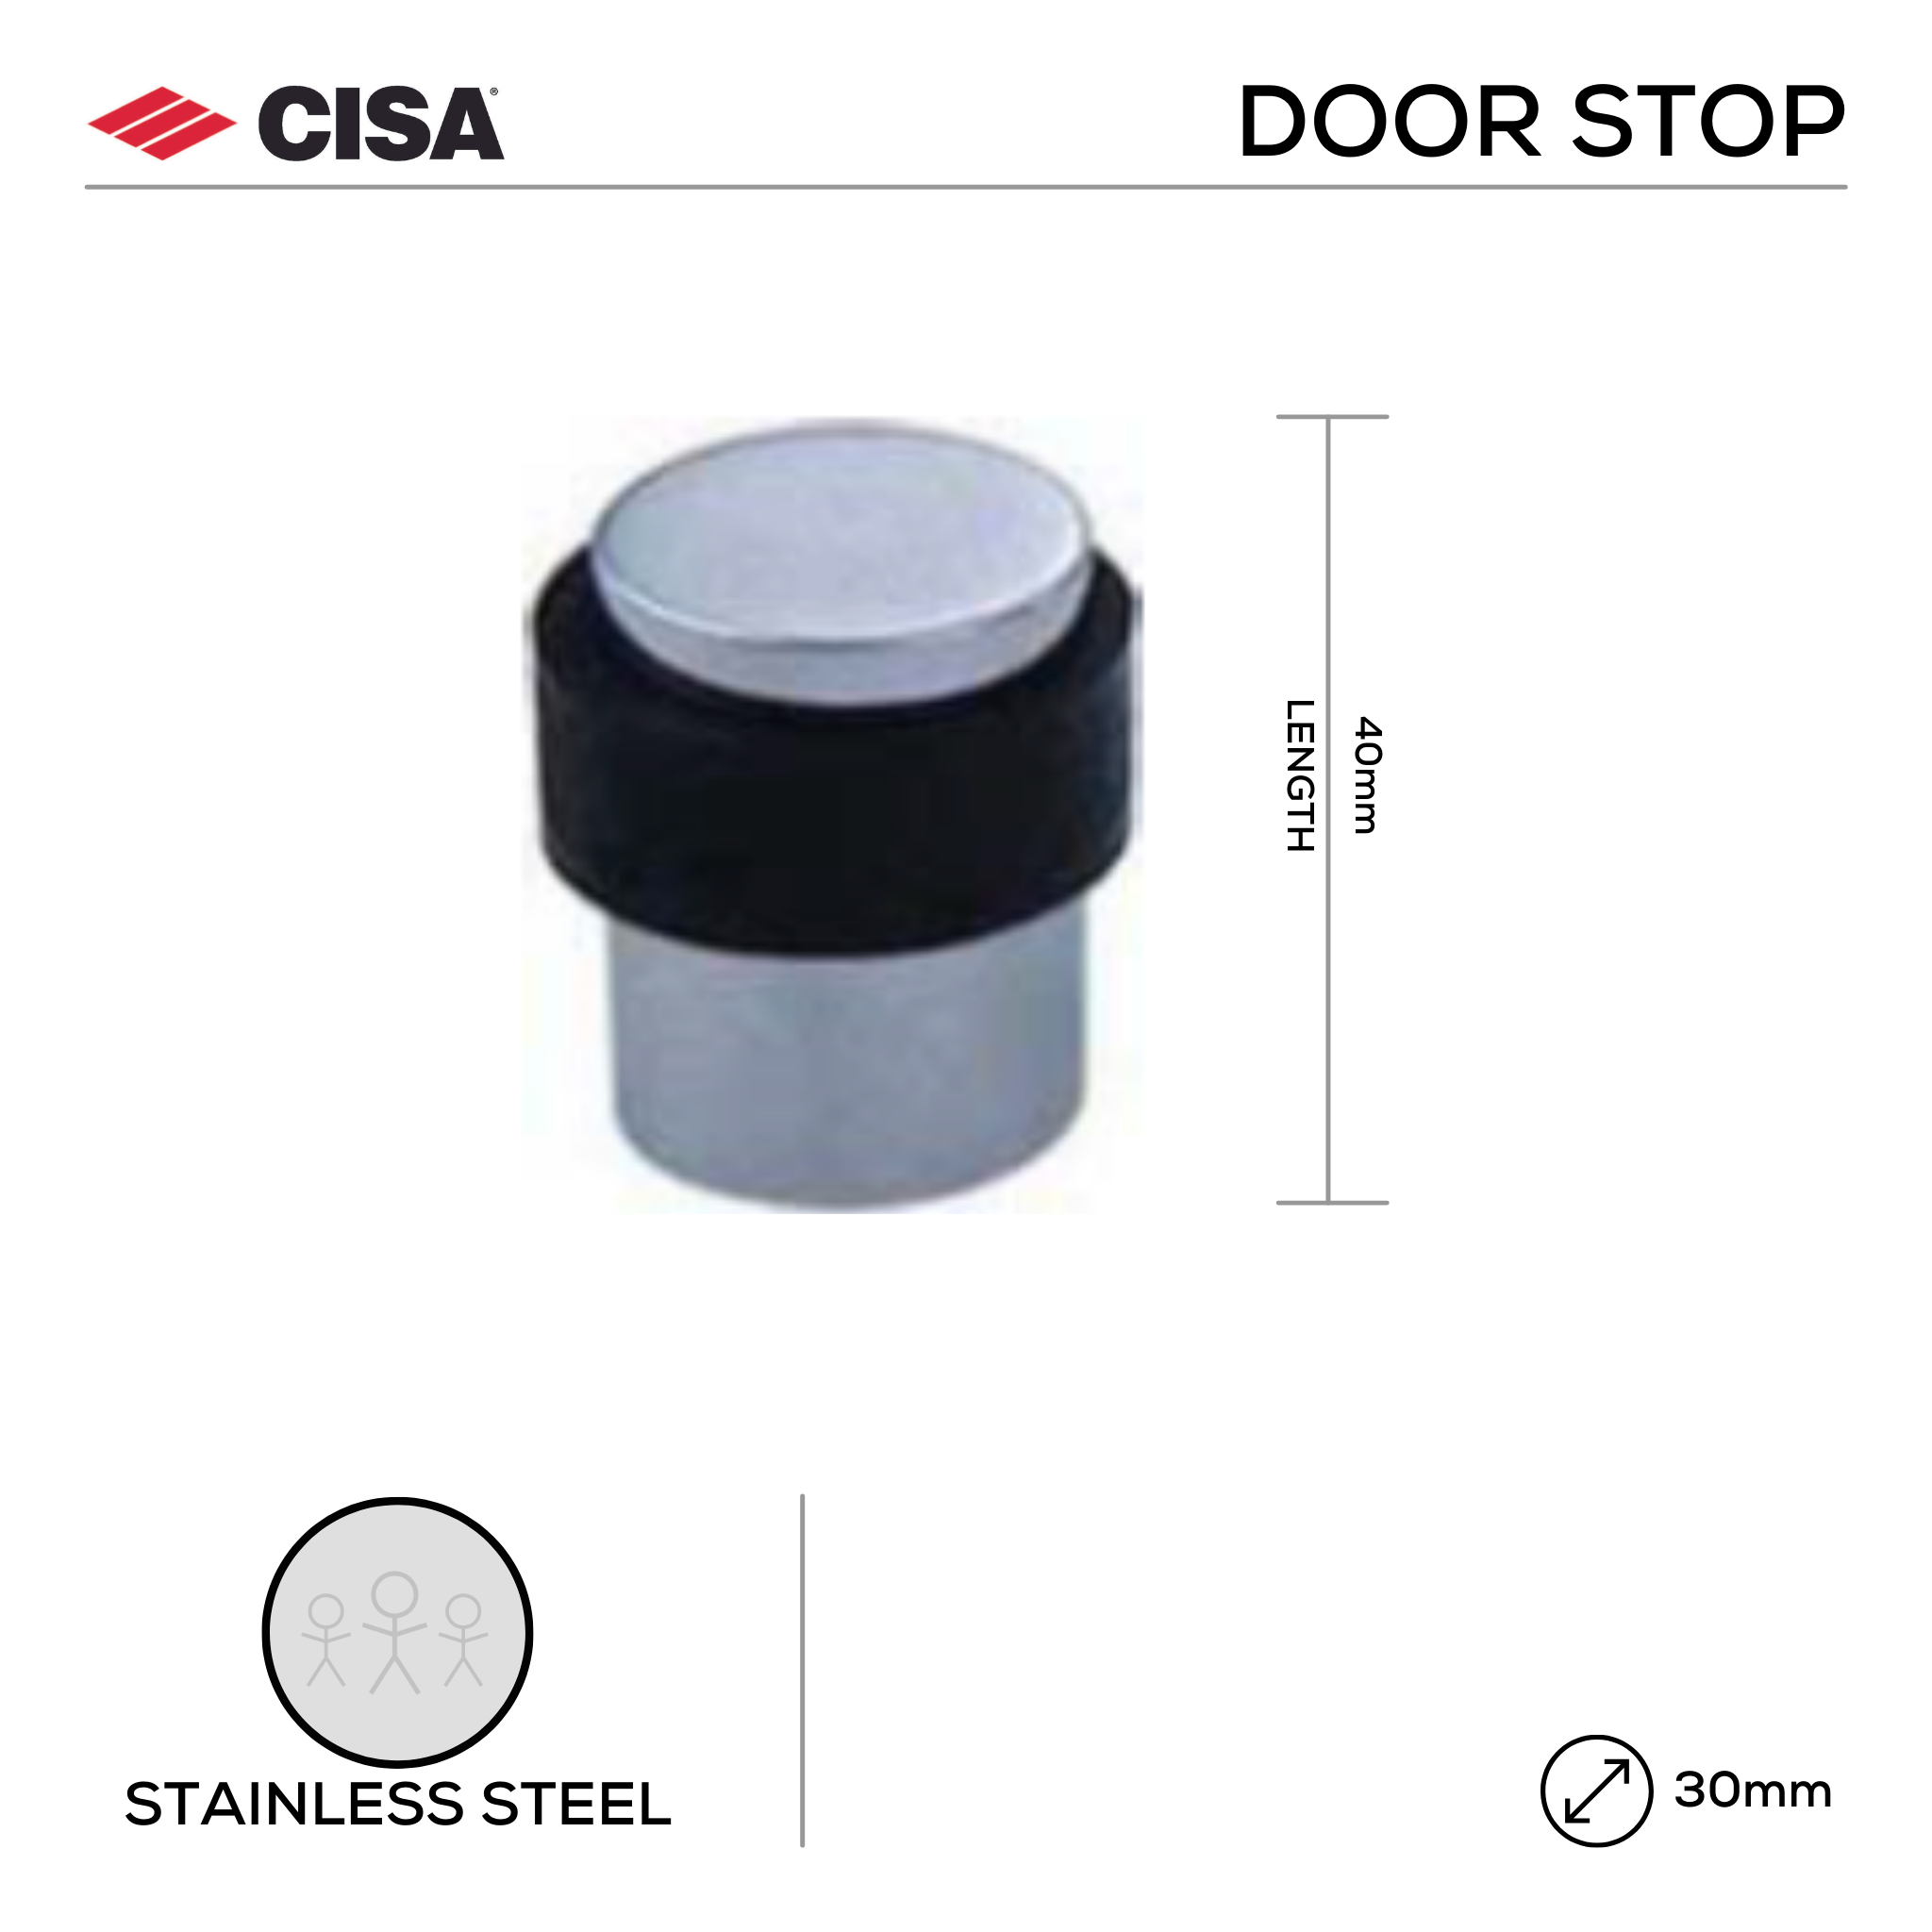 FDO6.SS, Door Stop, Floor Mounted, Round, 40mm (l) x 30mm (Ø), Stainless Steel, CISA